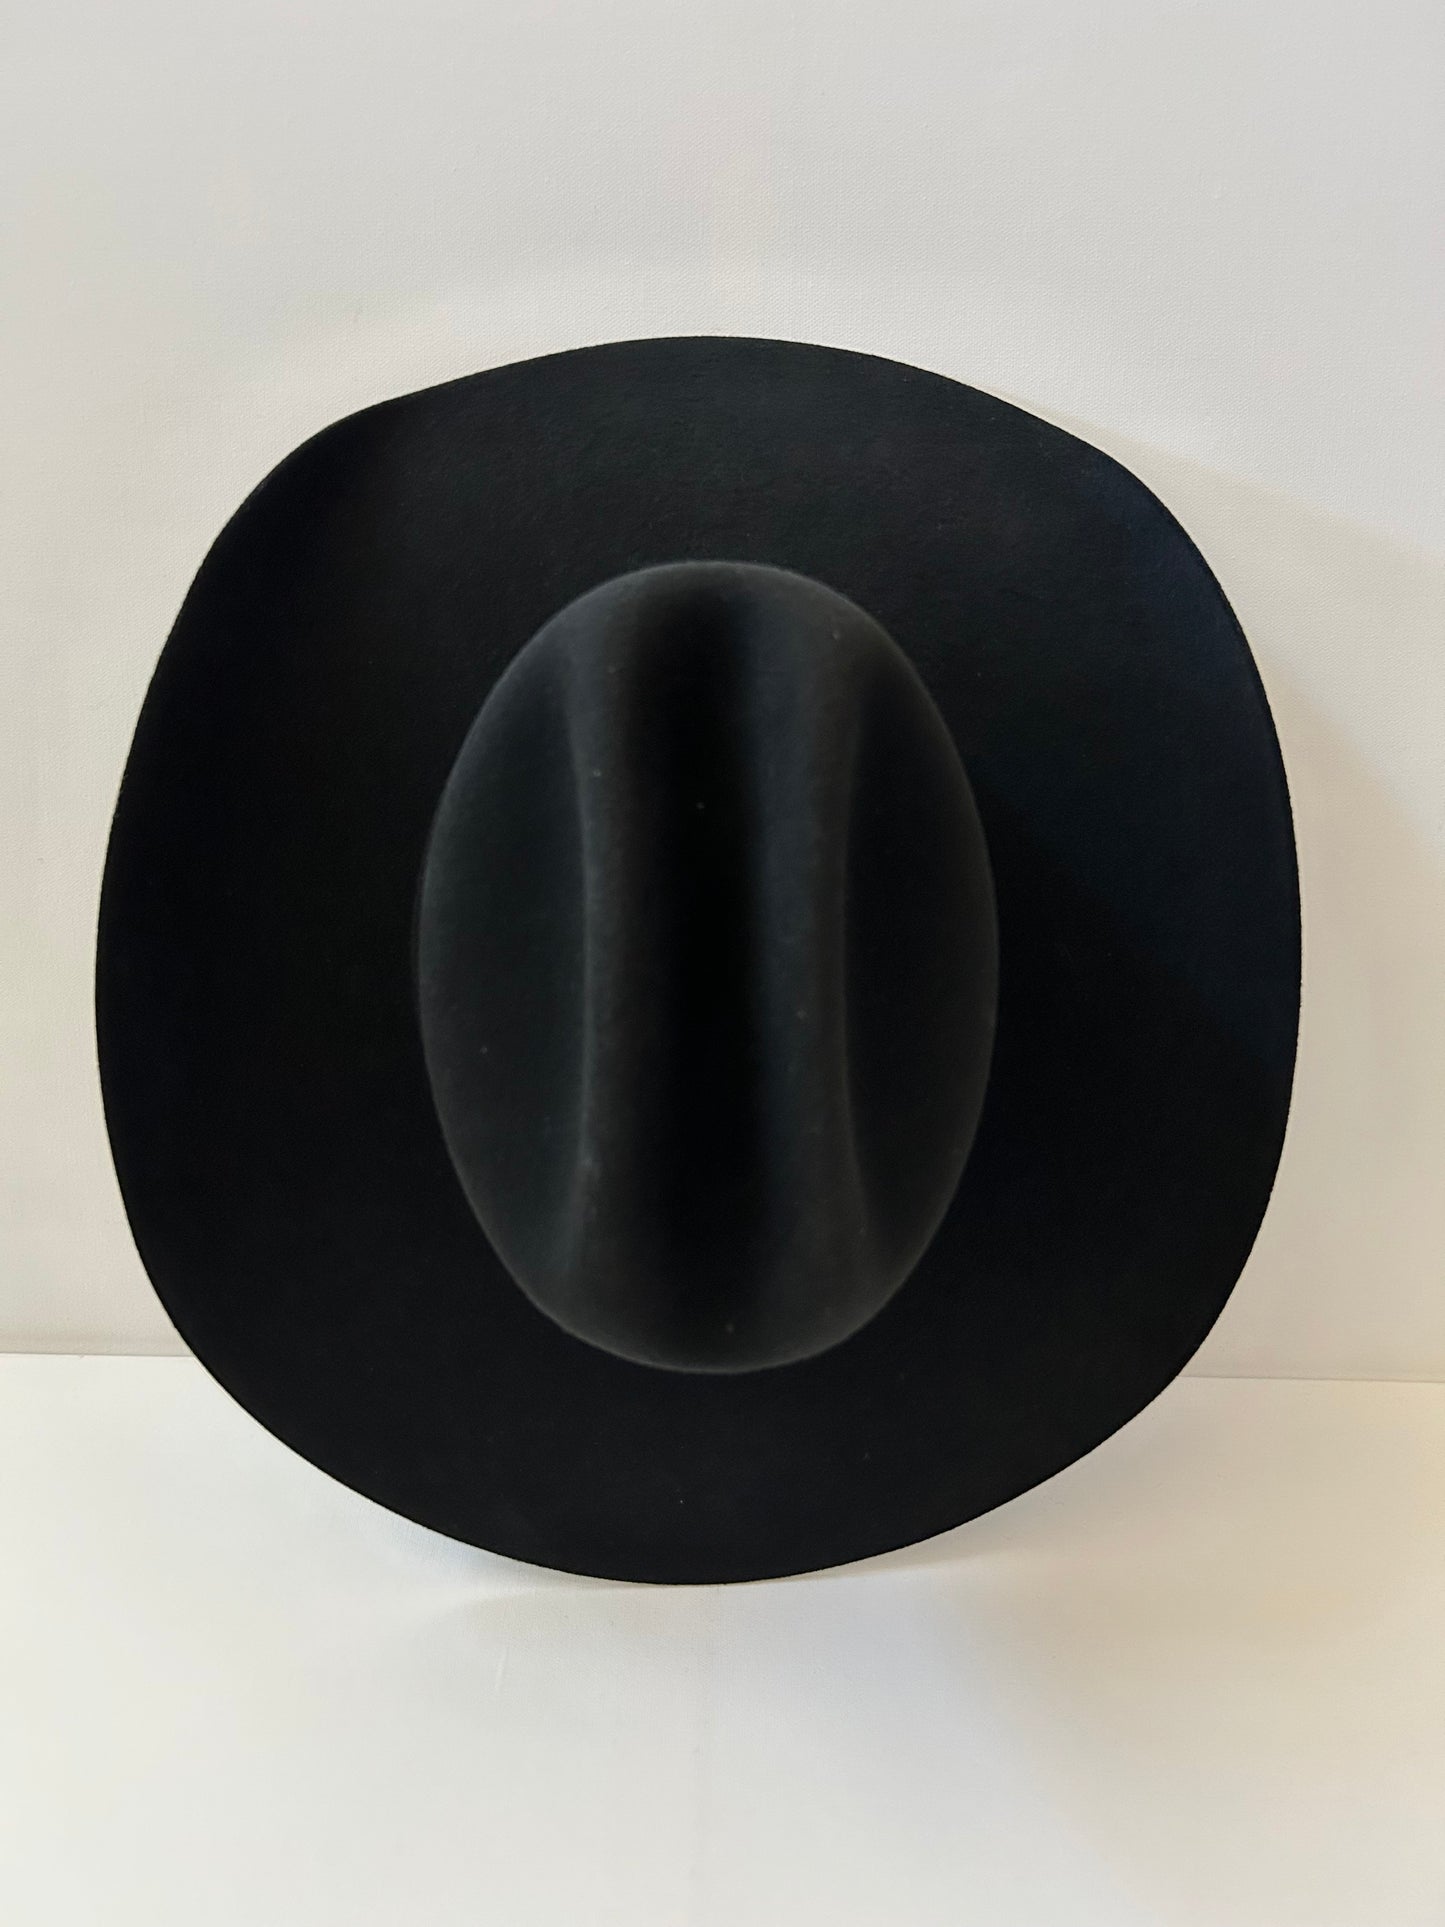 Wren Merino Wool Western Hat - Black